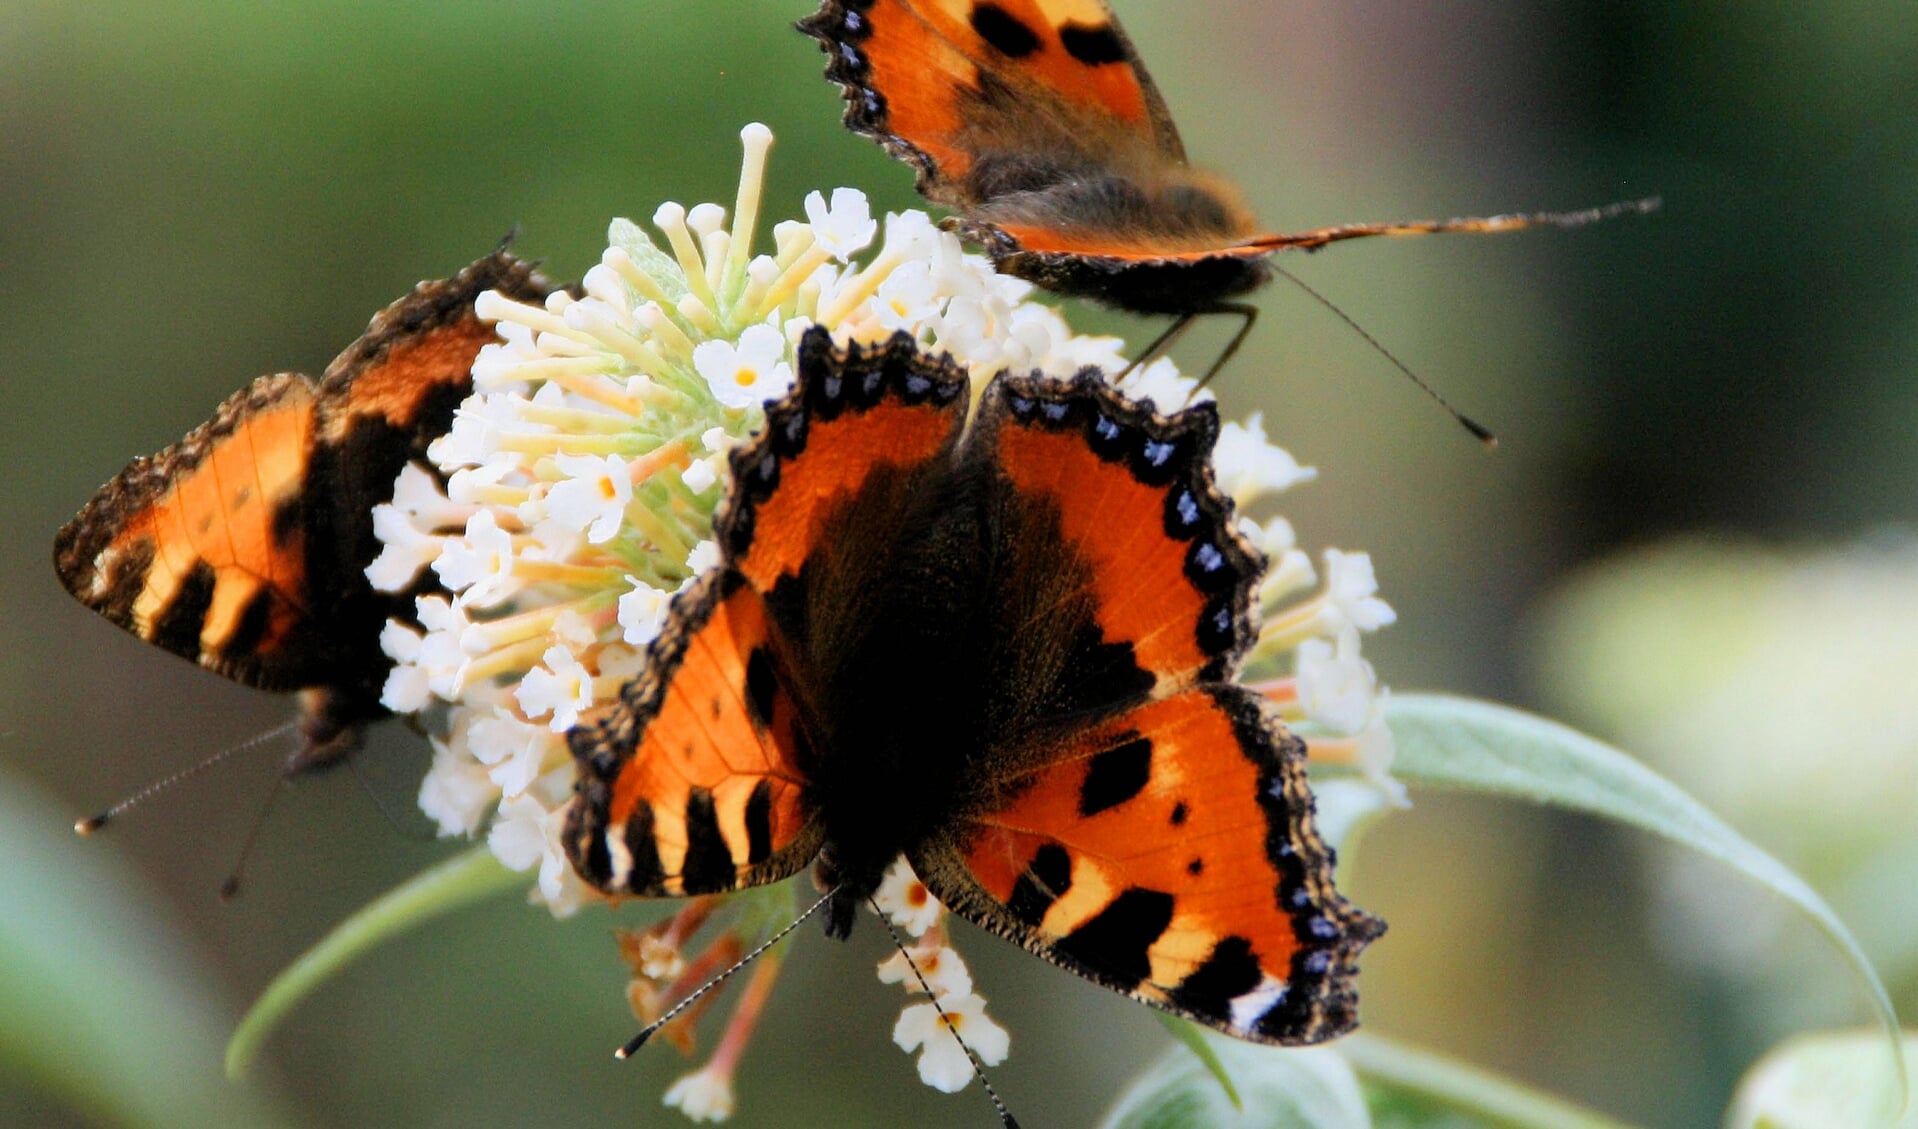 De gemeente wil graag meer vlinders in Zaanstad zien.